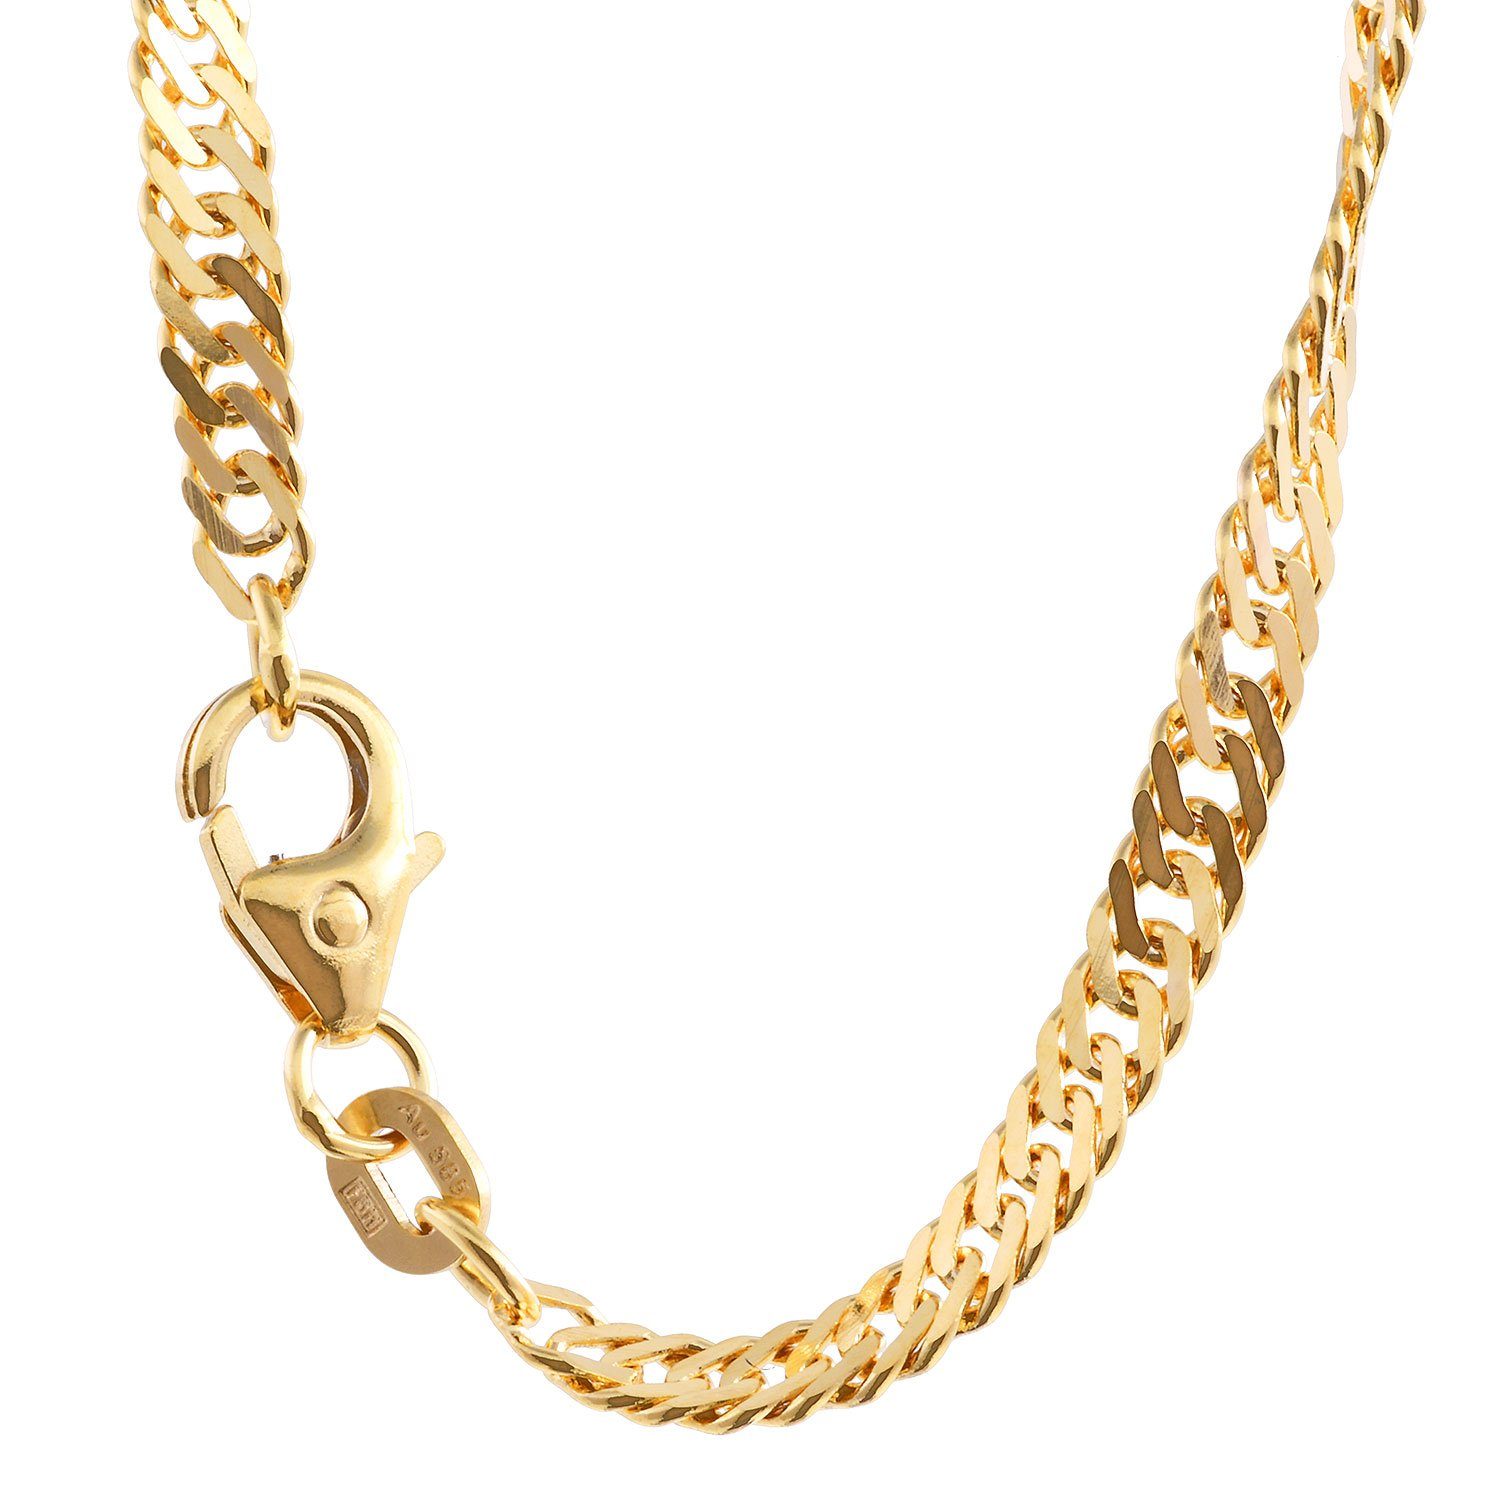 HOPLO Goldkette Singapurkette 585 - 14 Karat Gold 2,9 mm 50 cm Halskette  Goldkette, Made in Germany, Edle Kette in Juwelier Qualität